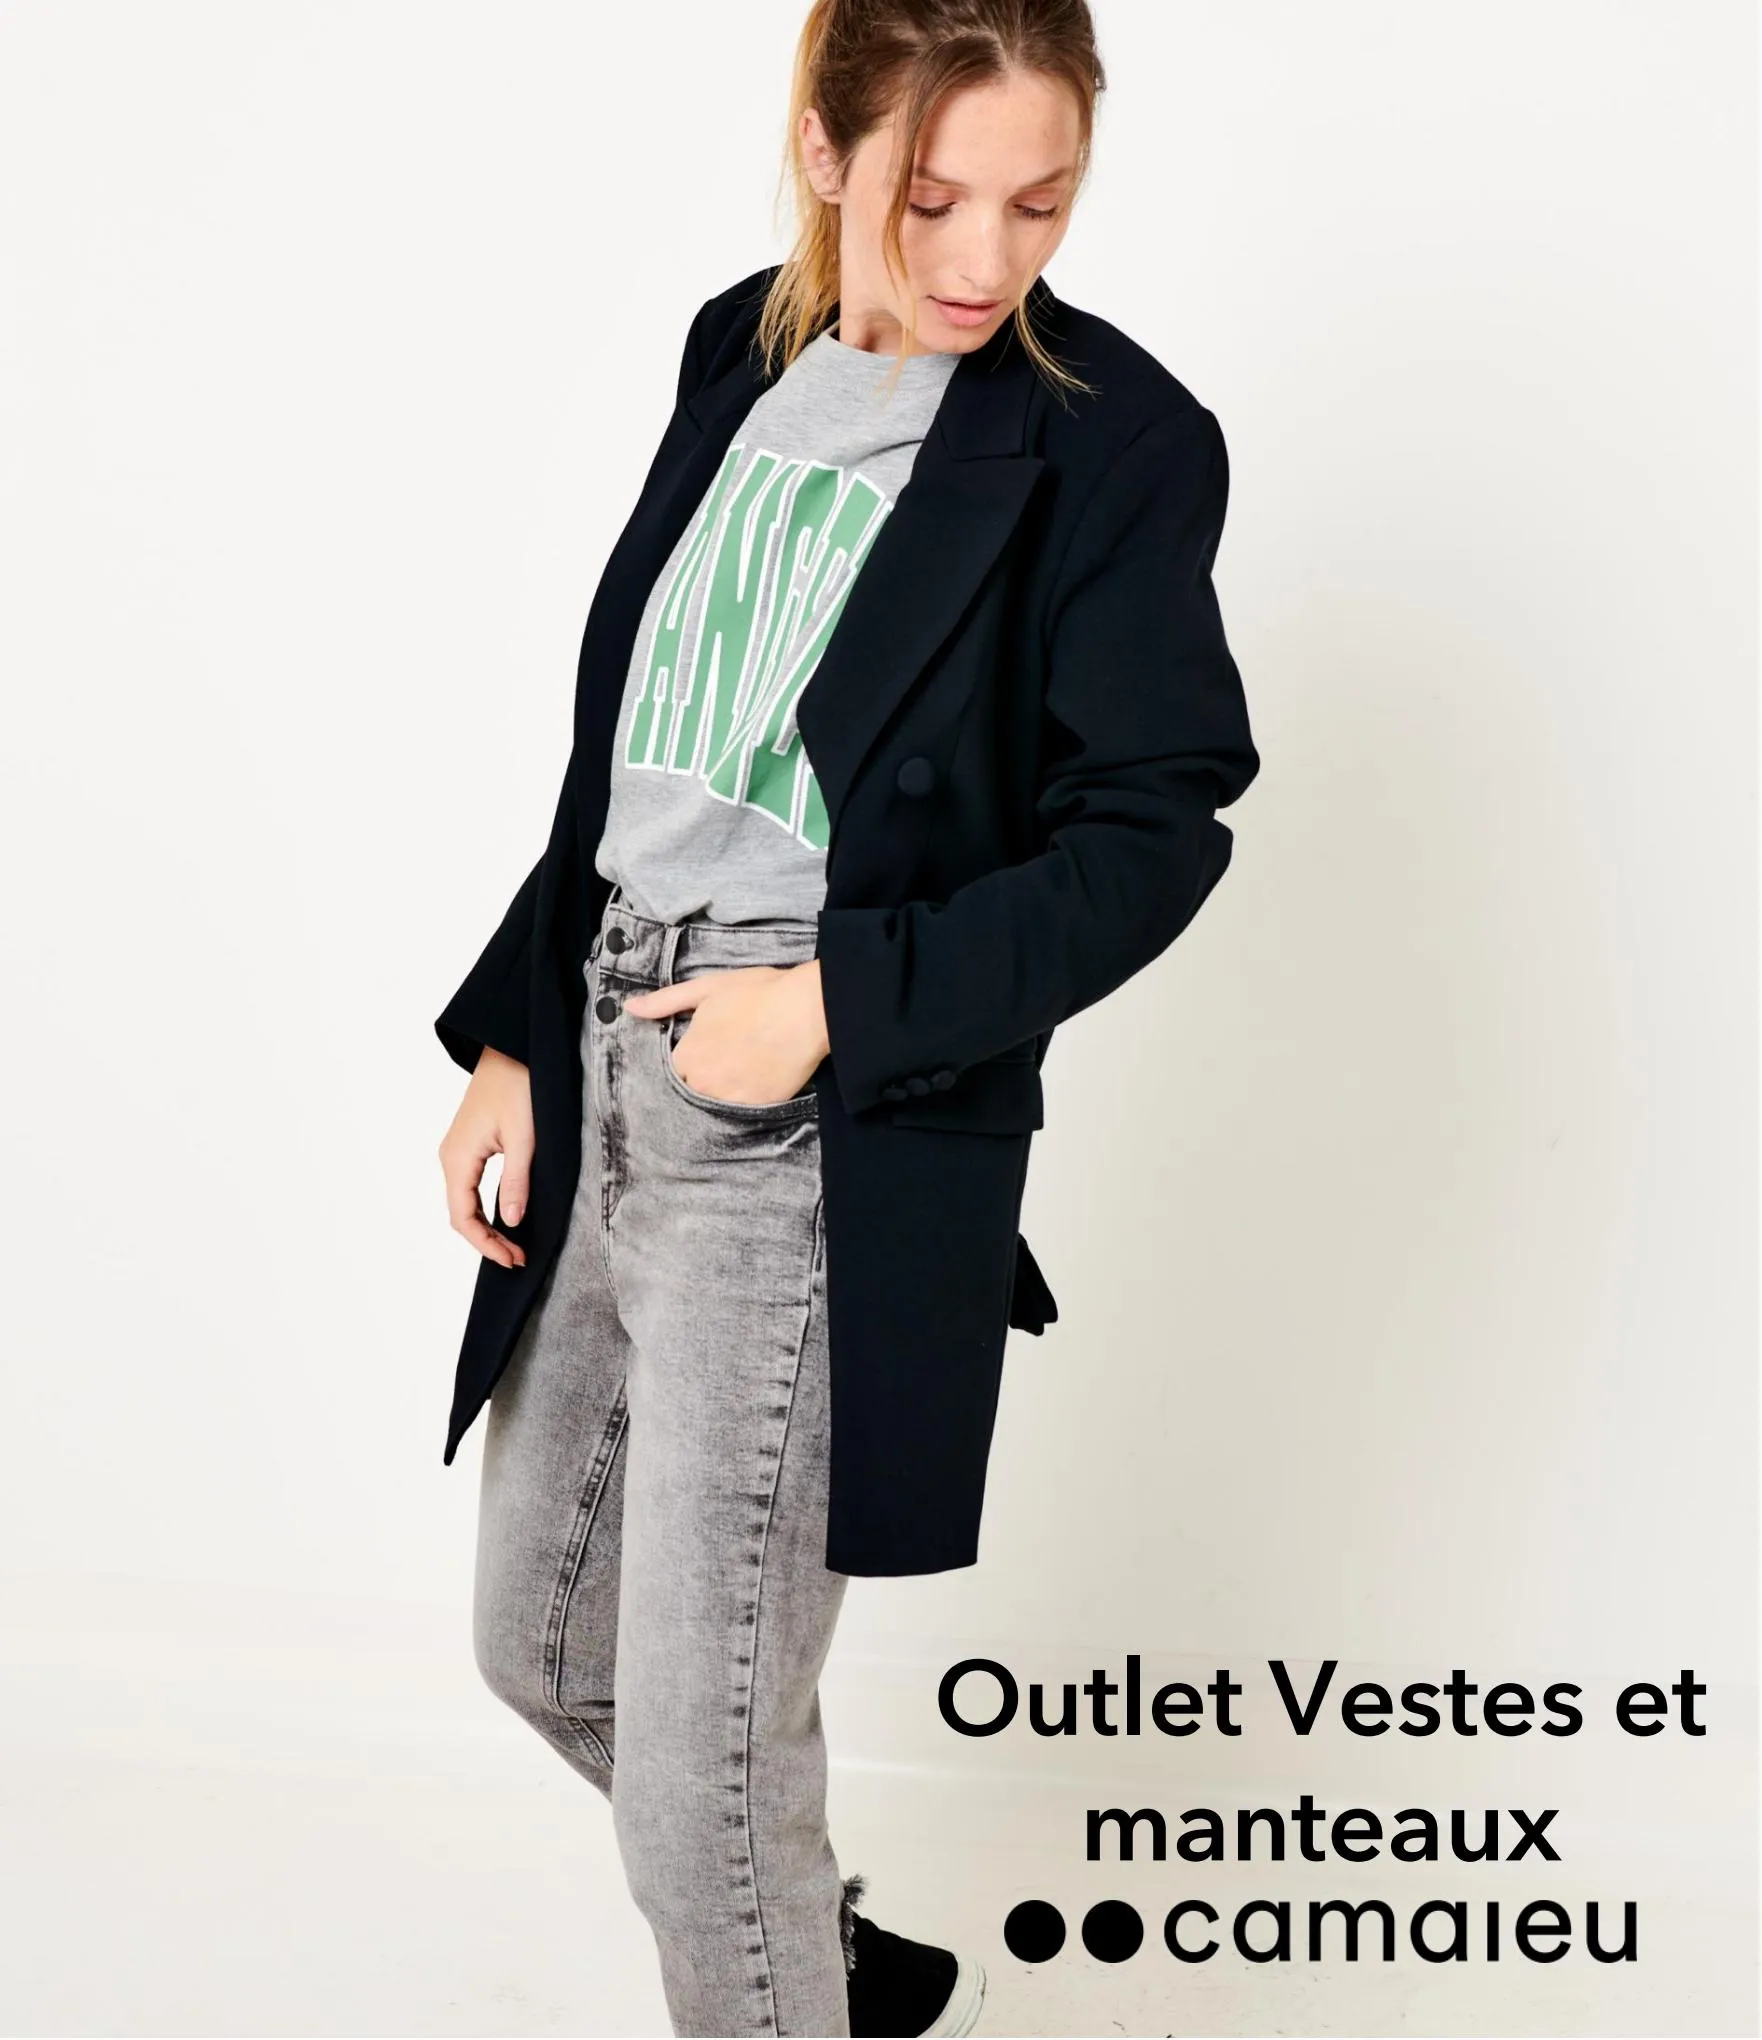 Catalogue Outlet Vestes et manteaux, page 00001